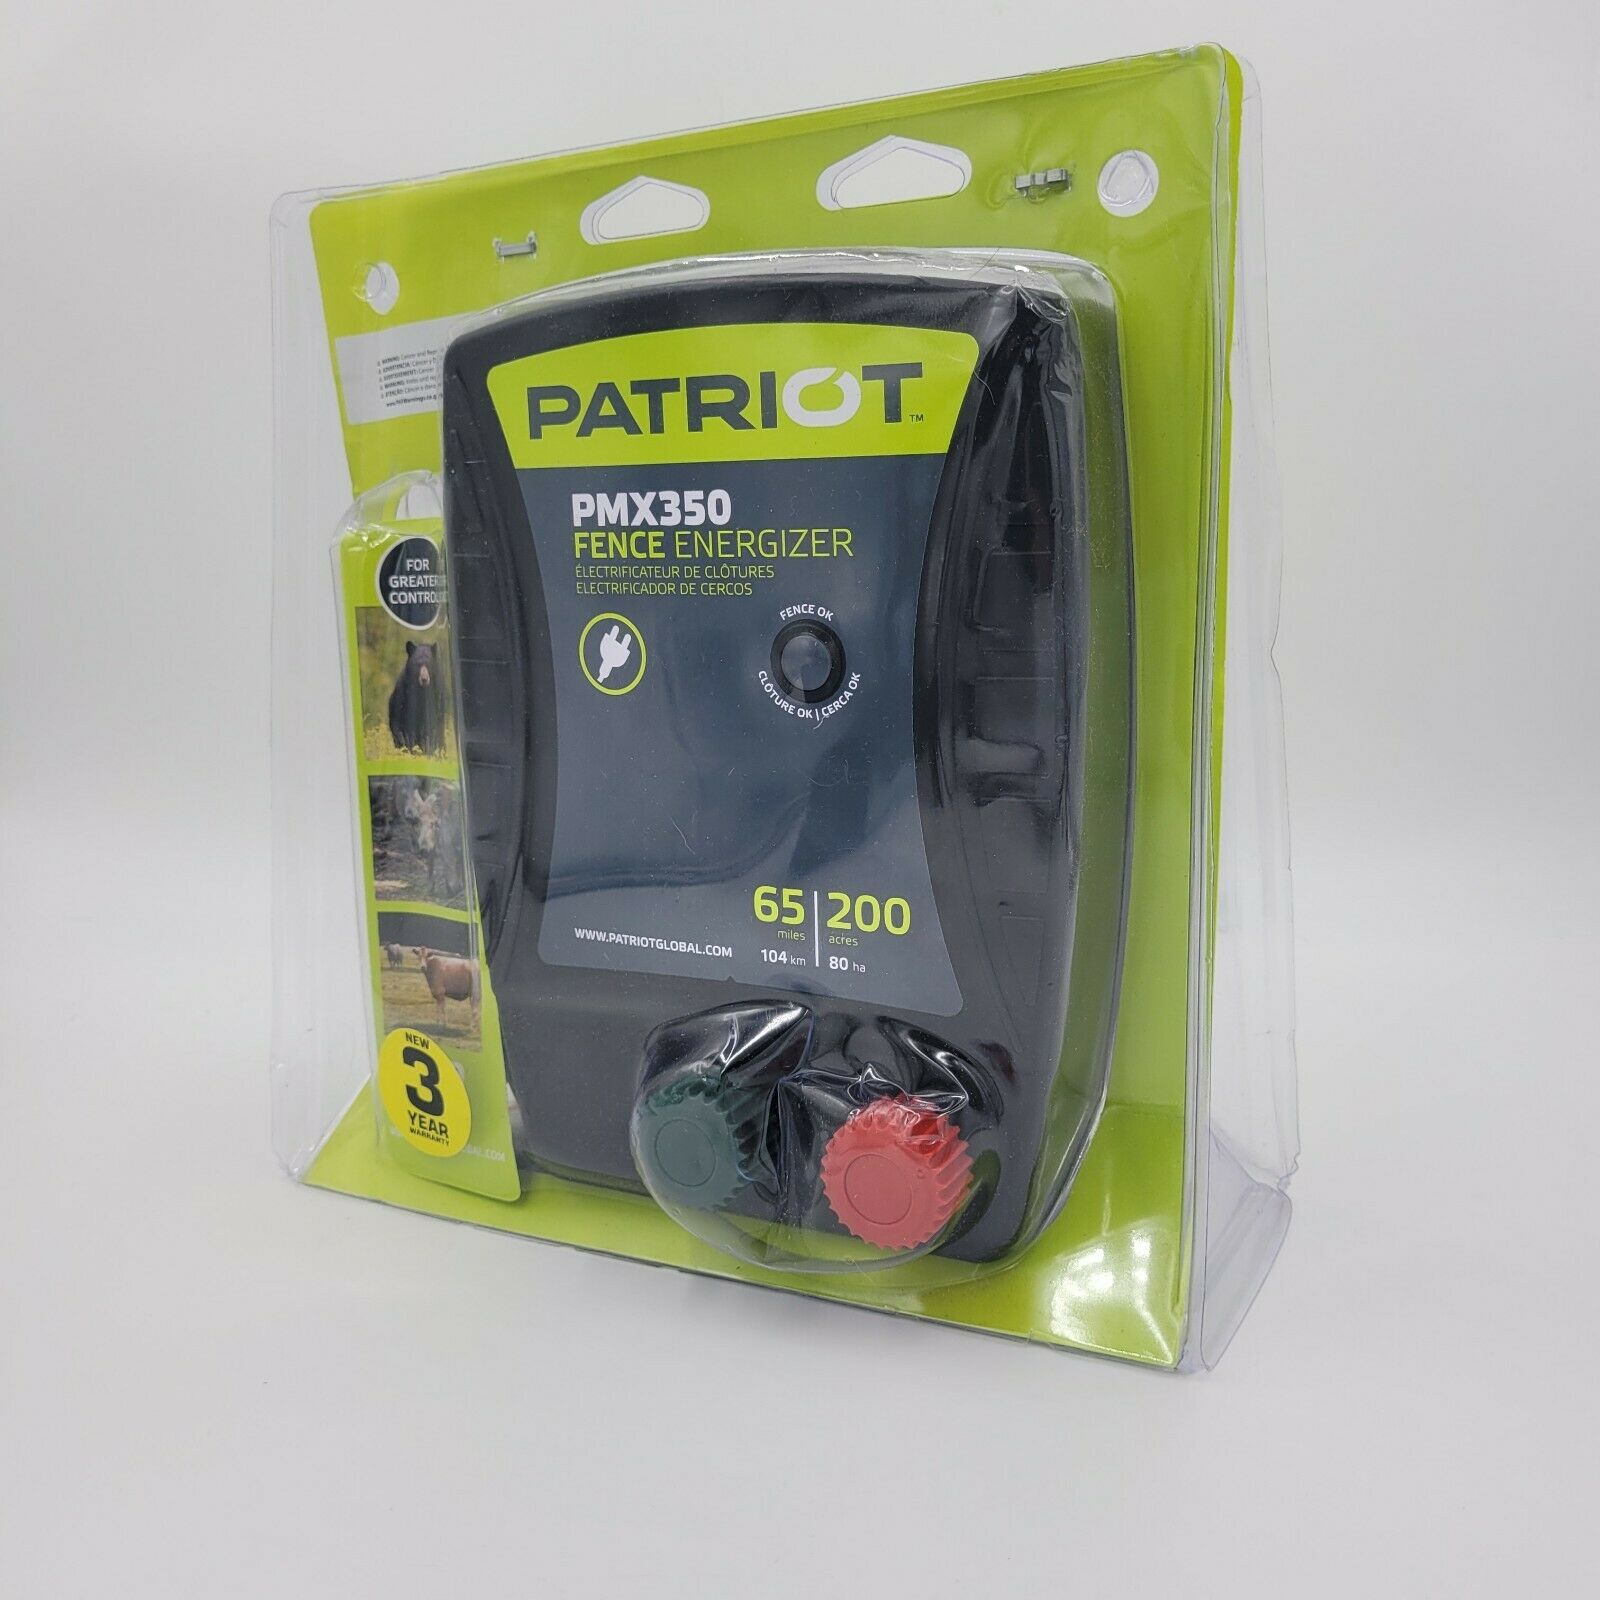 Patriot Pmx350 Fence Energizer 3.5 Joule